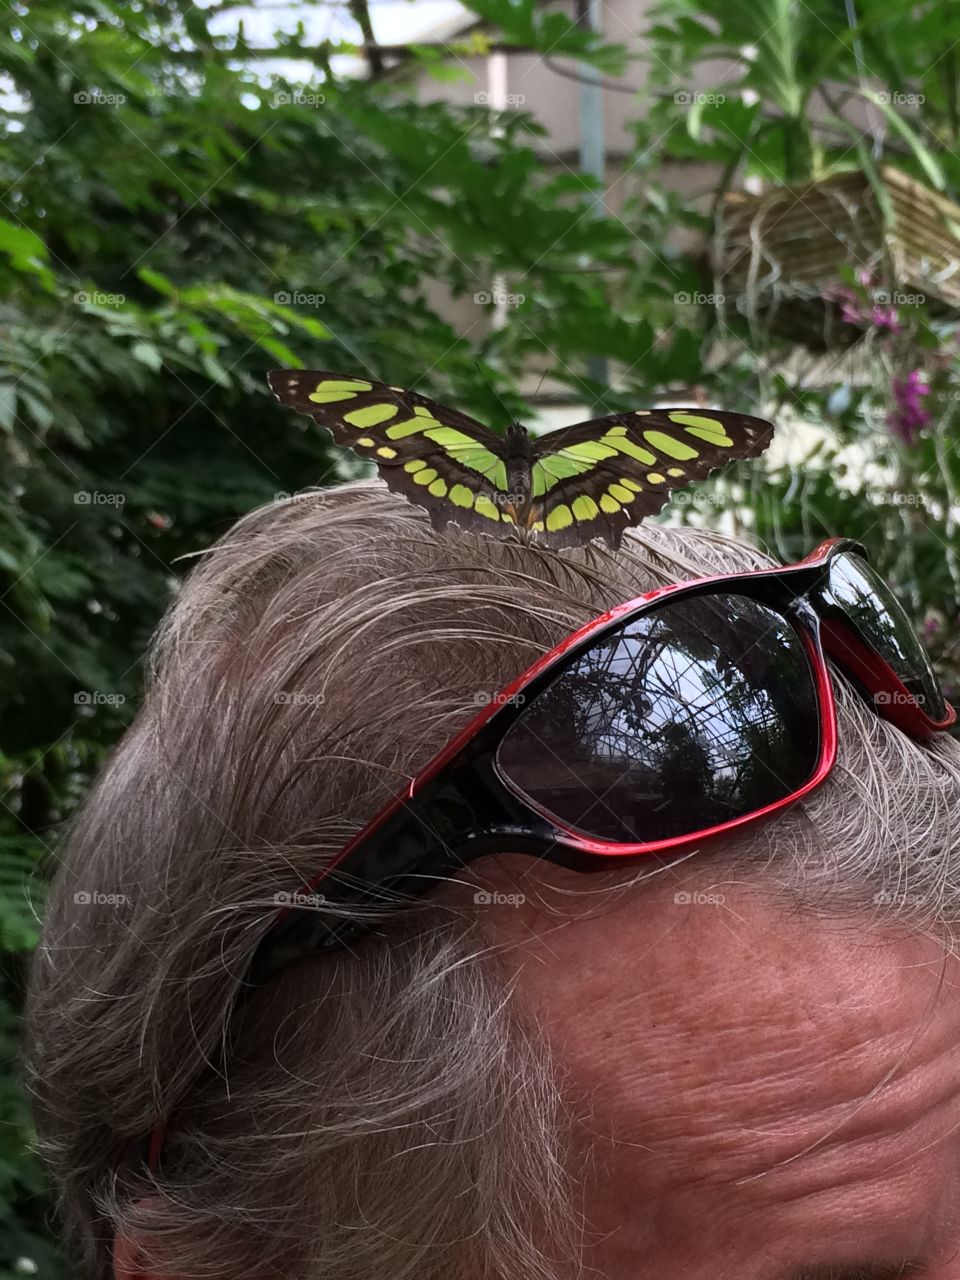 Butterfly on head